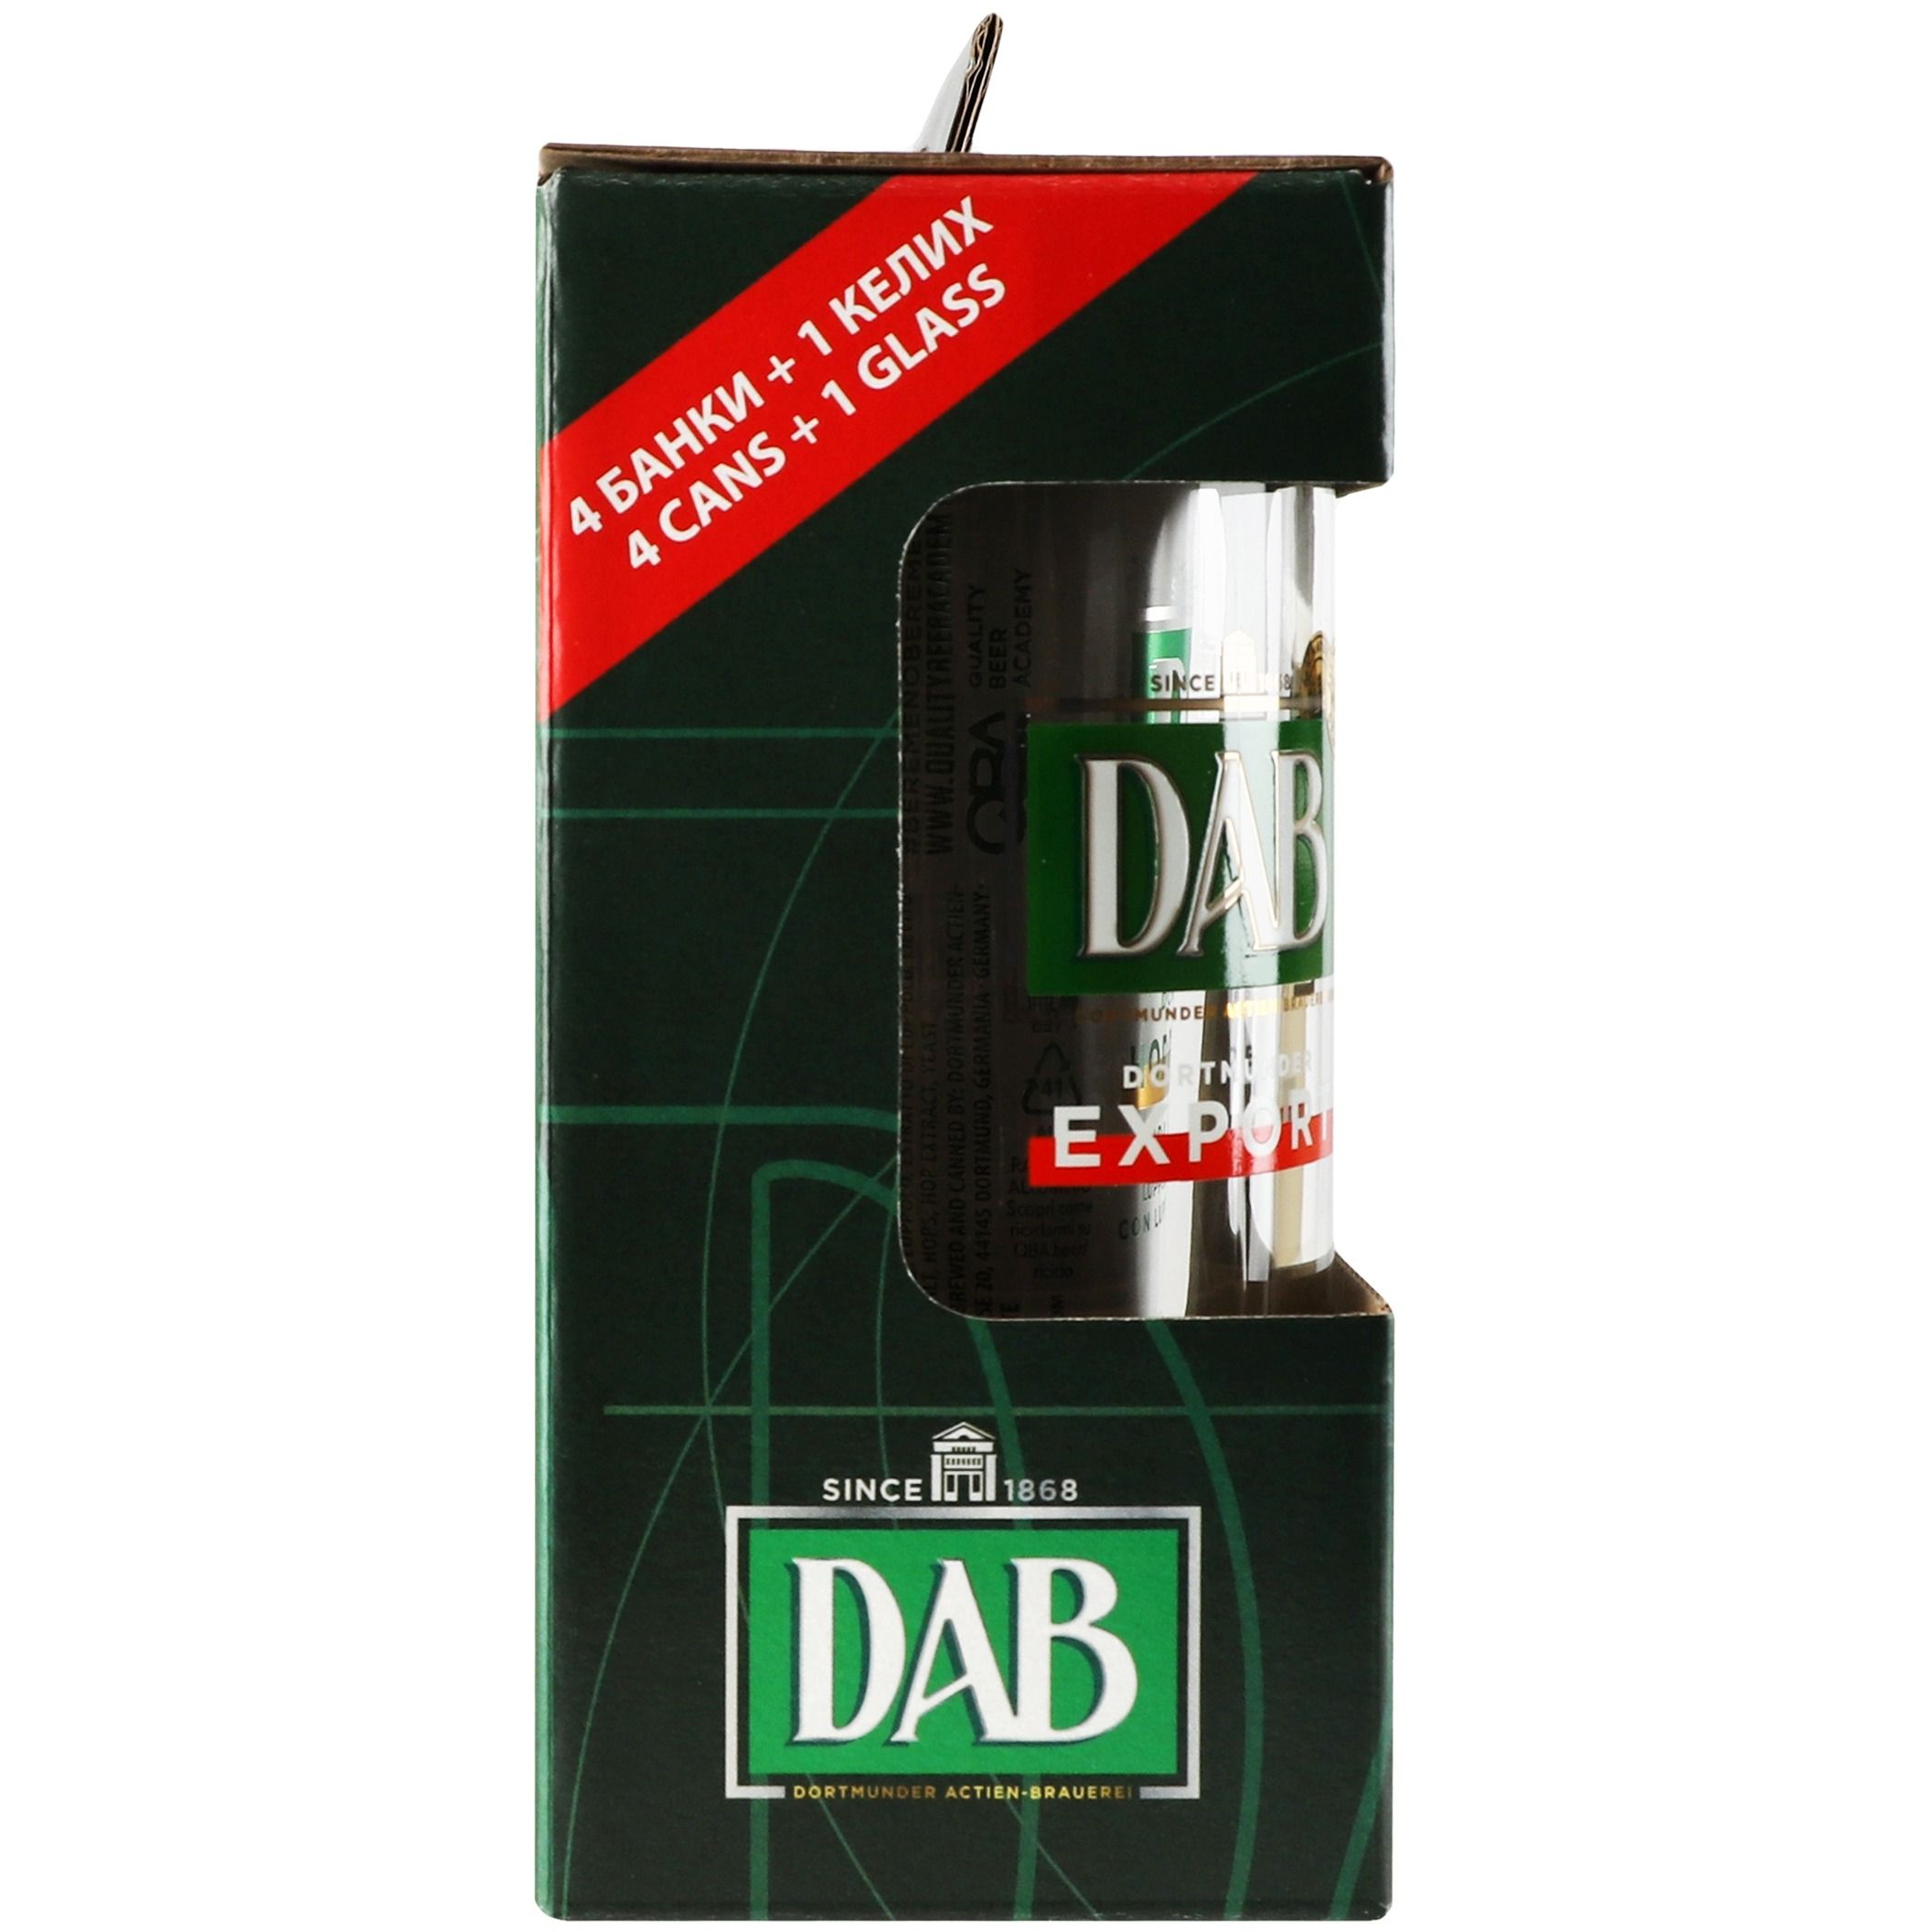 Набор: пиво DAB export 0.5л + DAB темное 0.5л + DAB kellerbier 0.5л + DAB Hoppy Lager 0.5л + бокал - фото 3